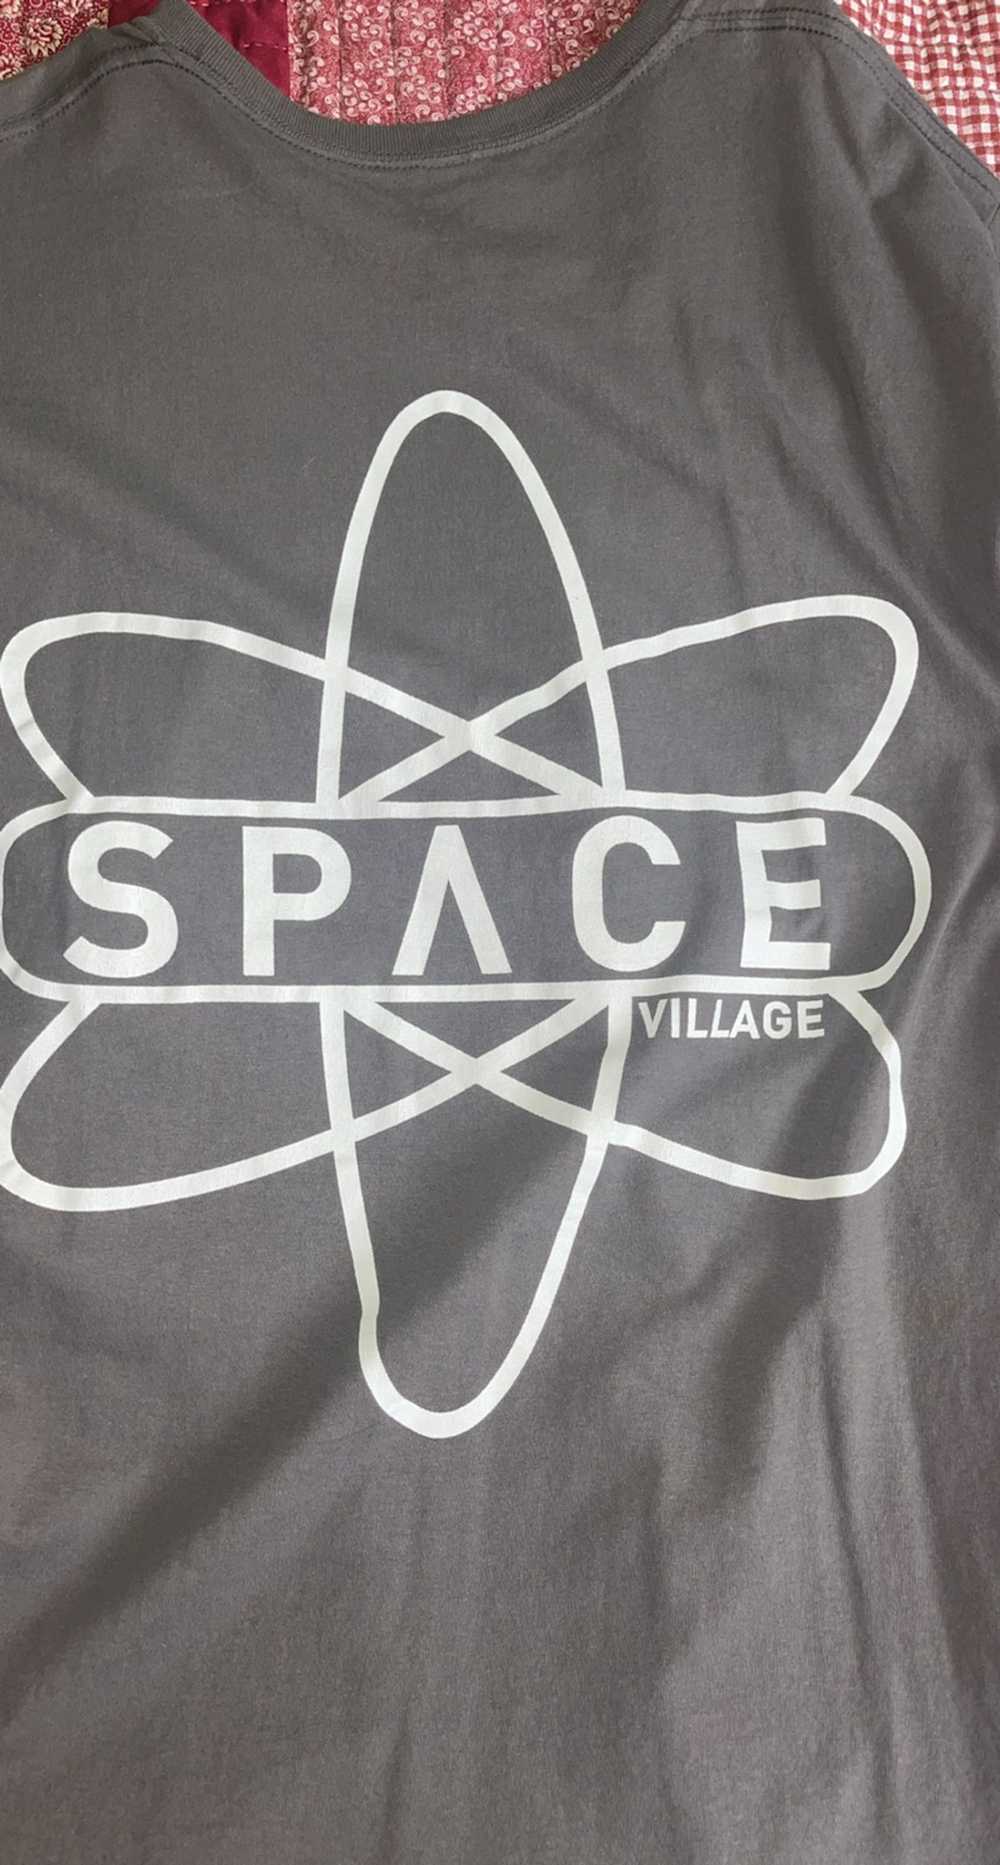 Travis Scott Travis Scott Space Village T shirt - Gem